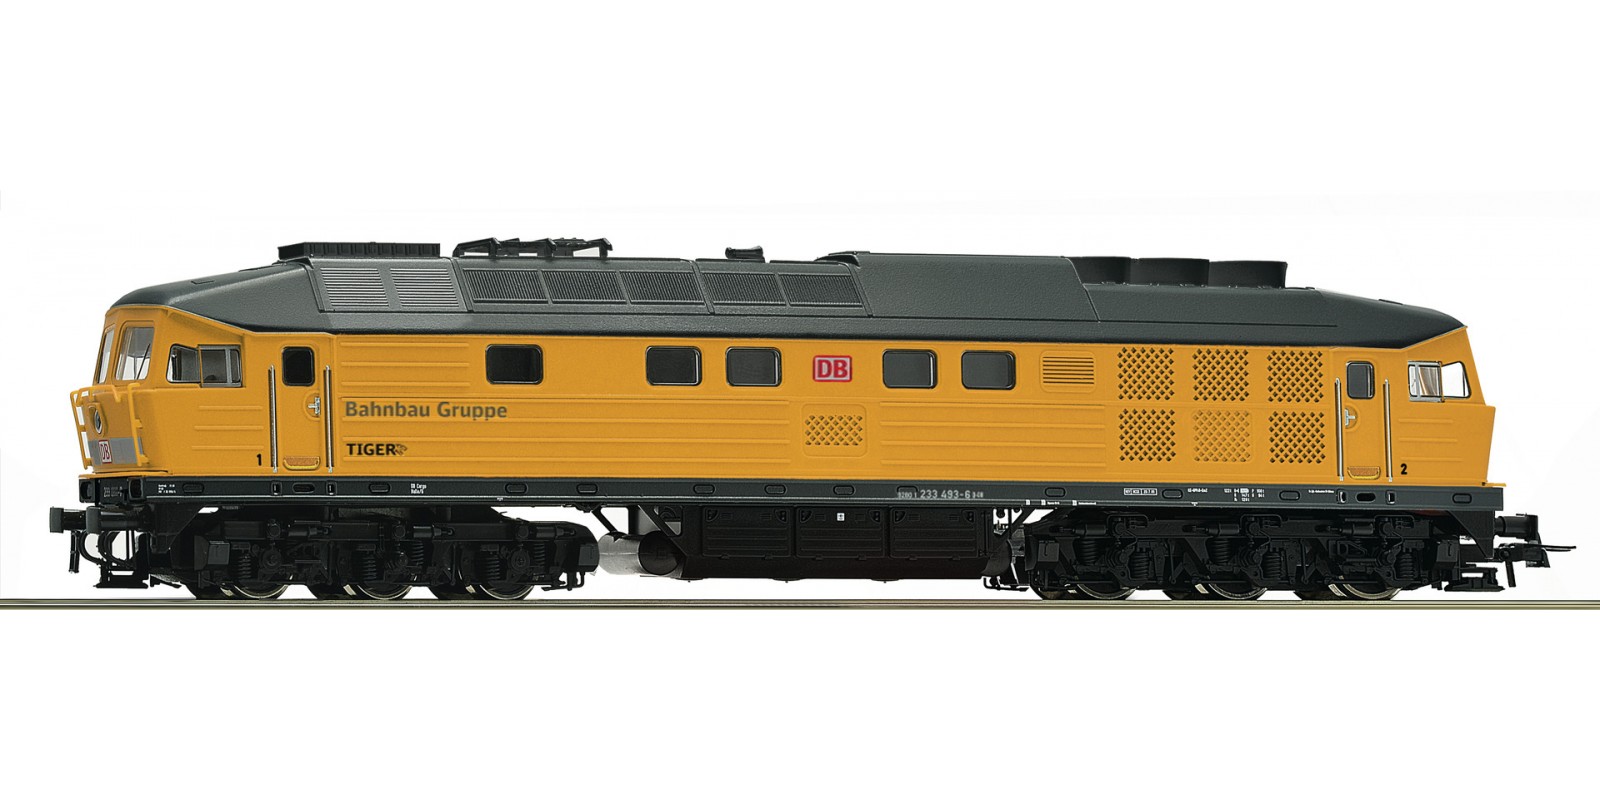 RO58469 Diesel locomotive 233 493-6